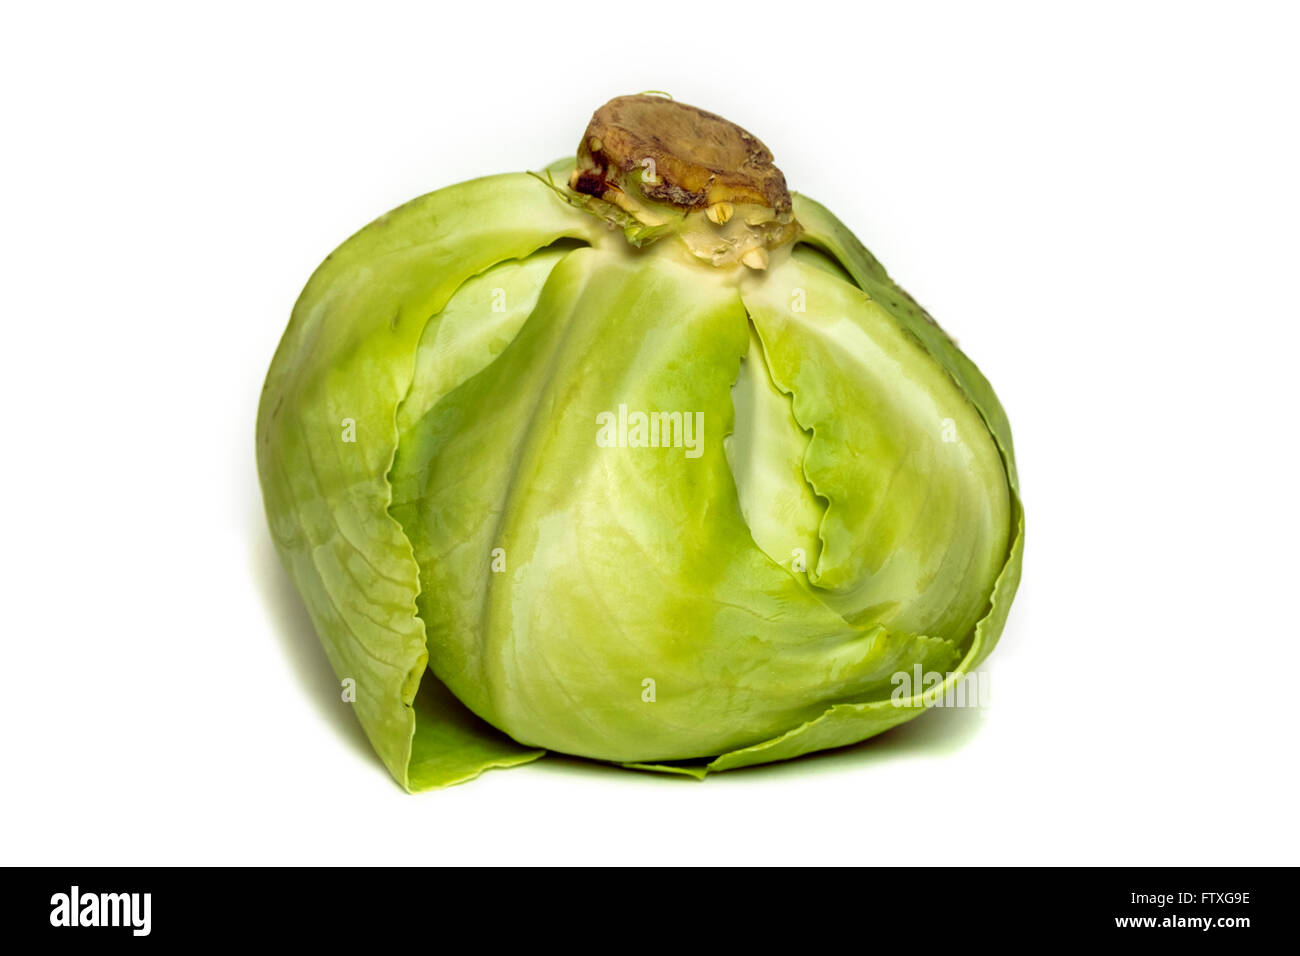 Big ripe fresh cabbage on white background Stock Photo